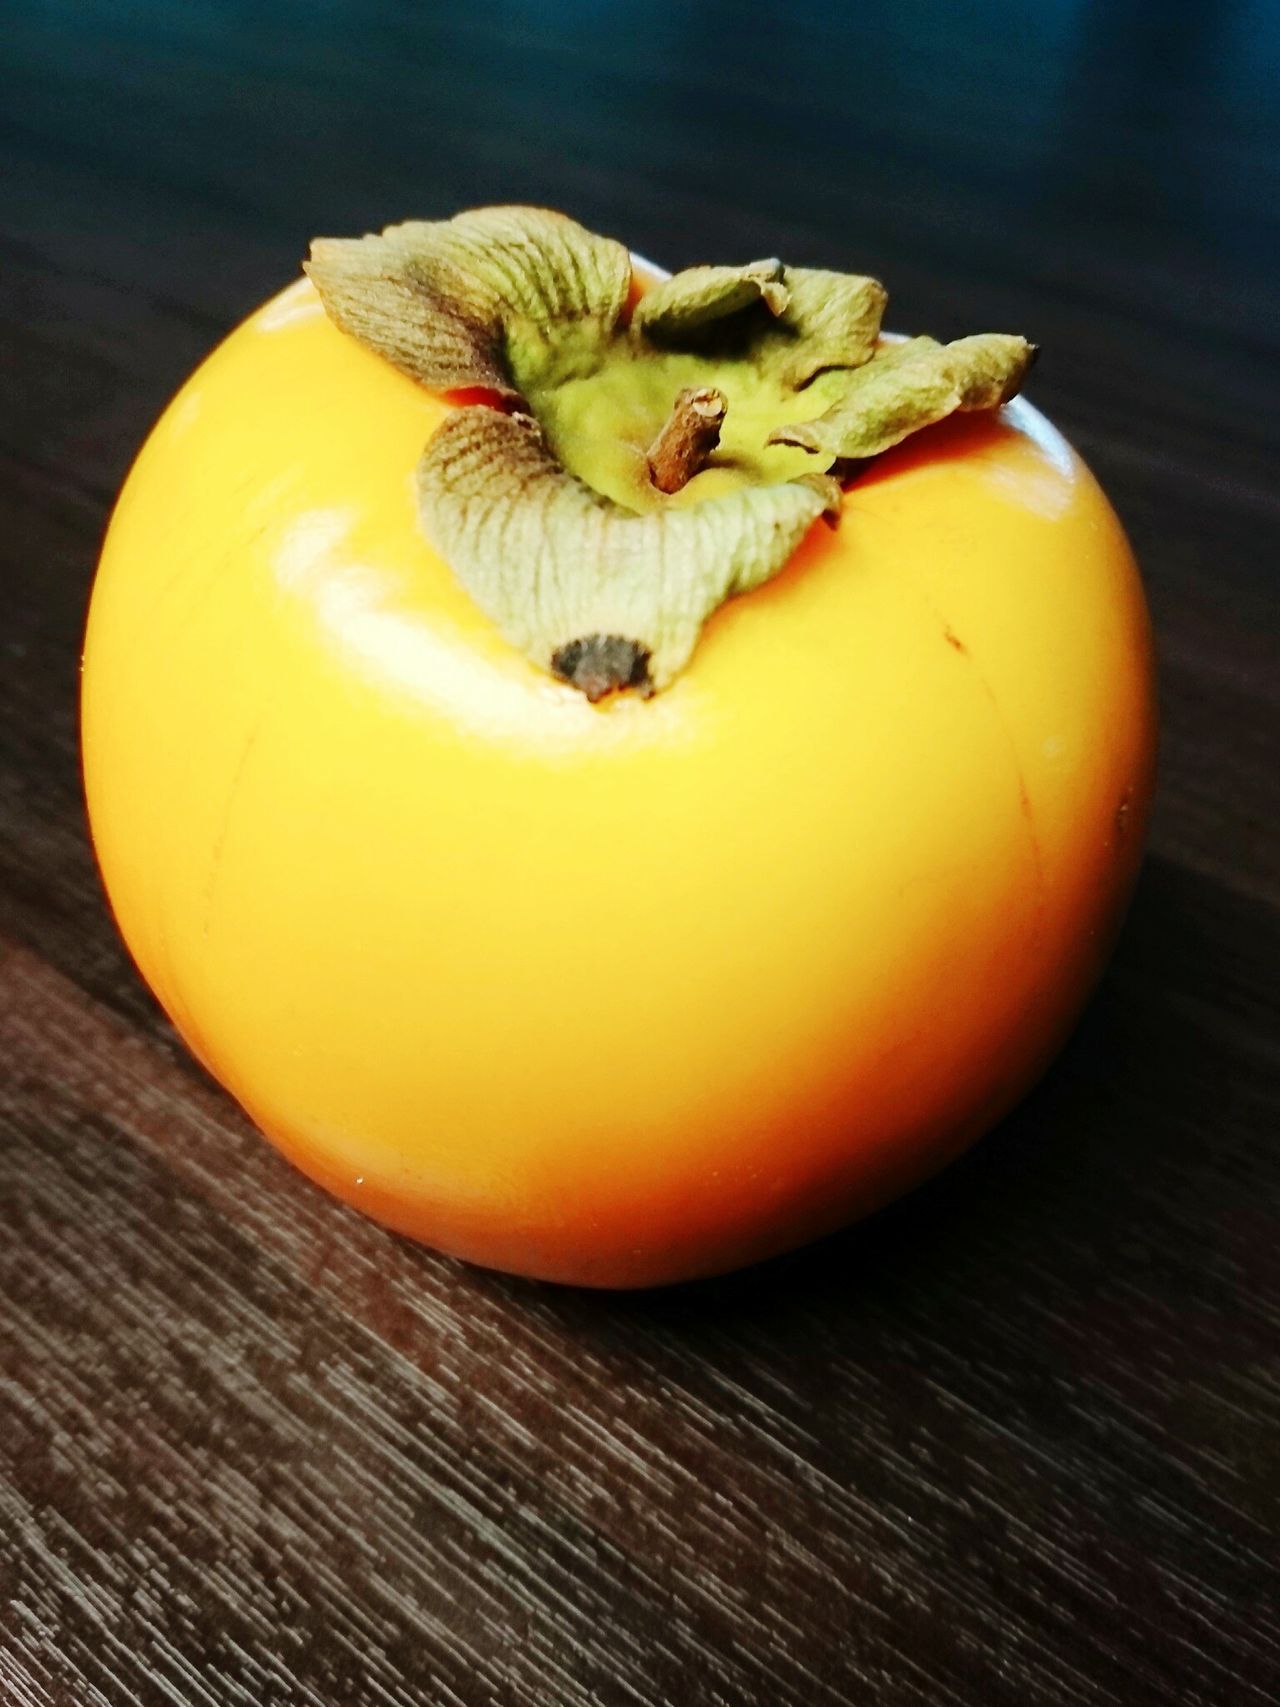 Kaki fruit